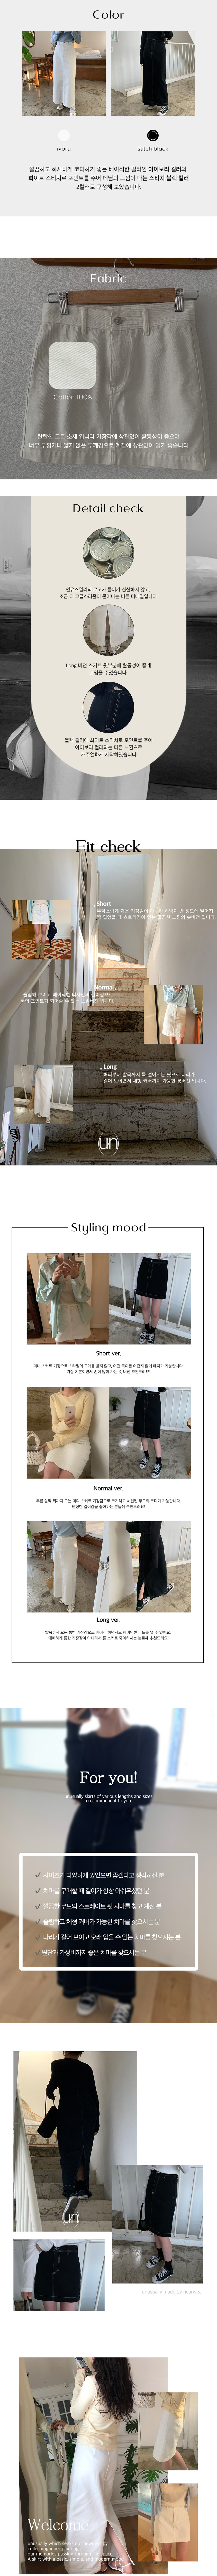 韓國食品-[Nearwear] unusually skirt (2color & 3 length)